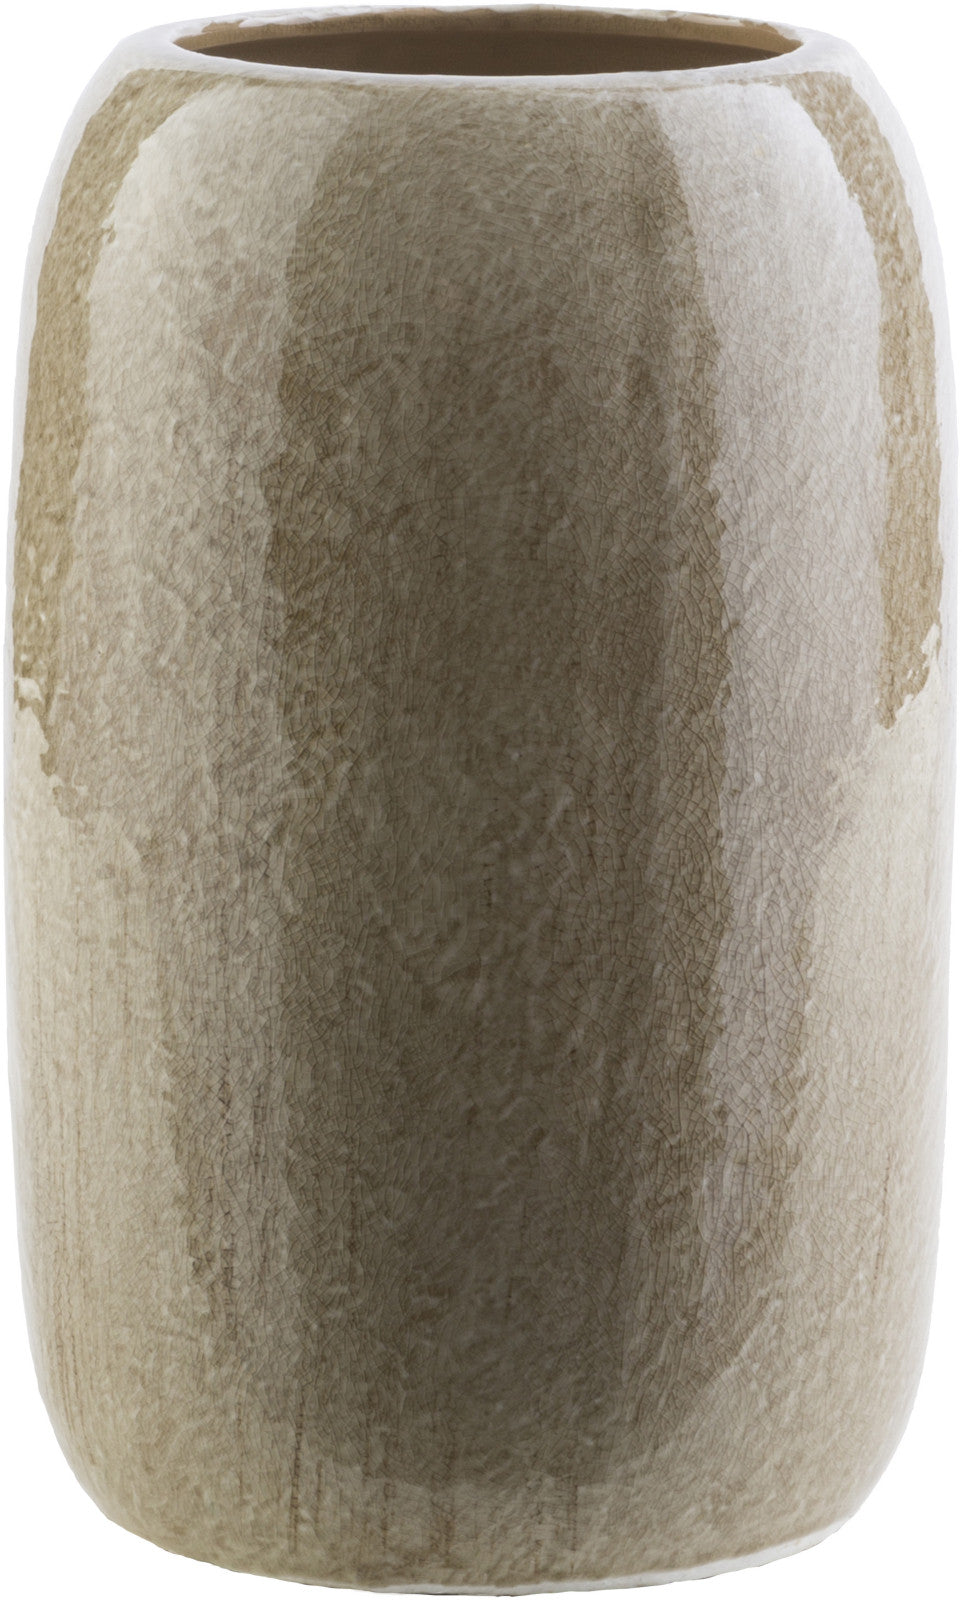 Surya Urbina URI-945 Vase Medium 7.5 X 7.5 X 10.8 inches